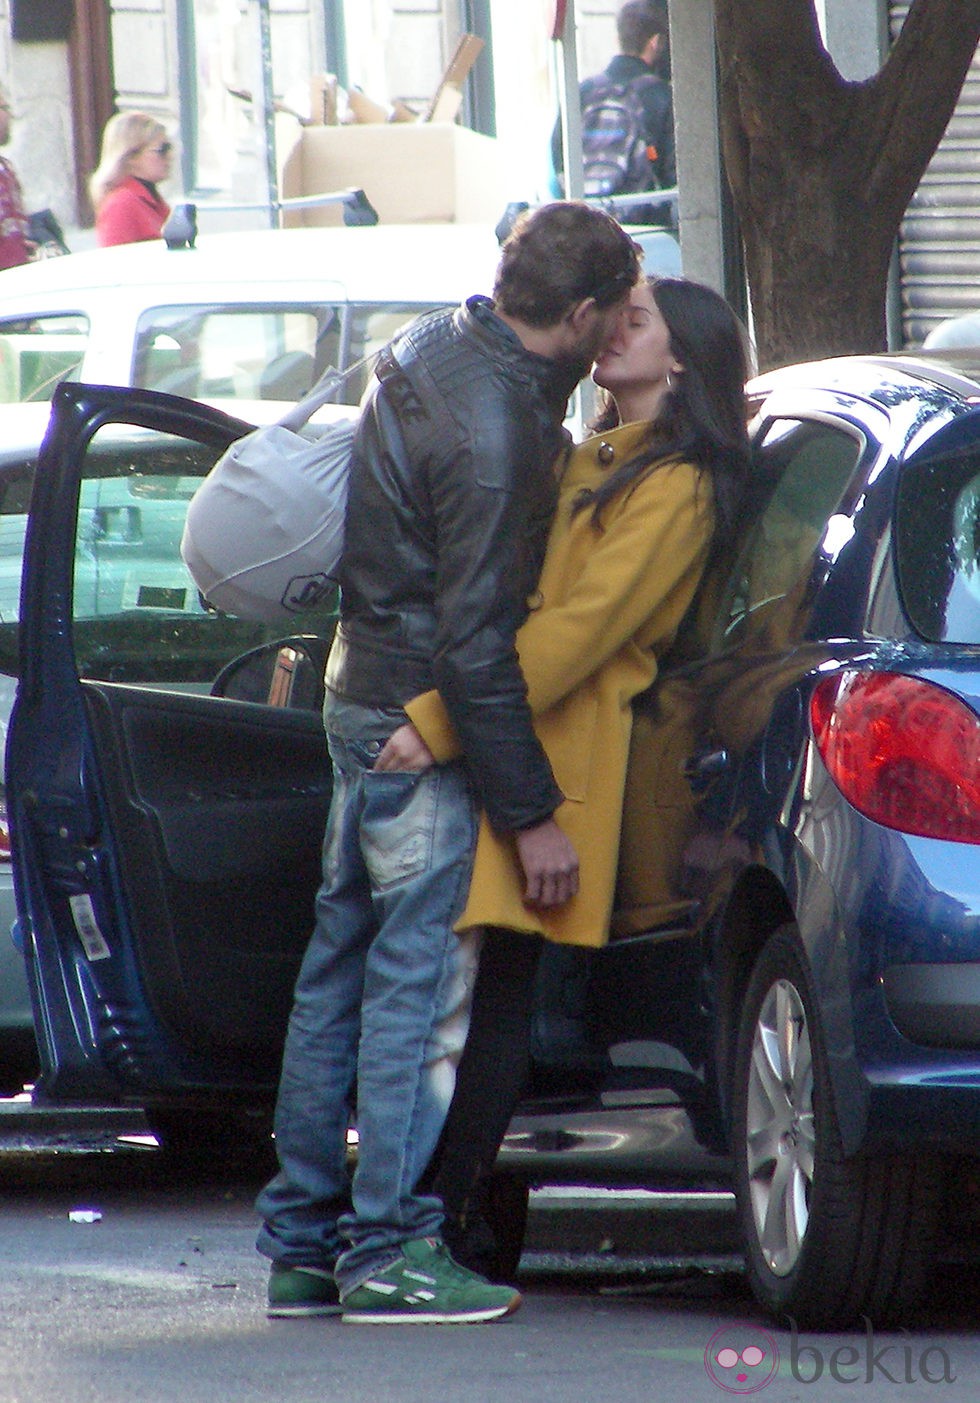 Paula Prendes y su novio besándose